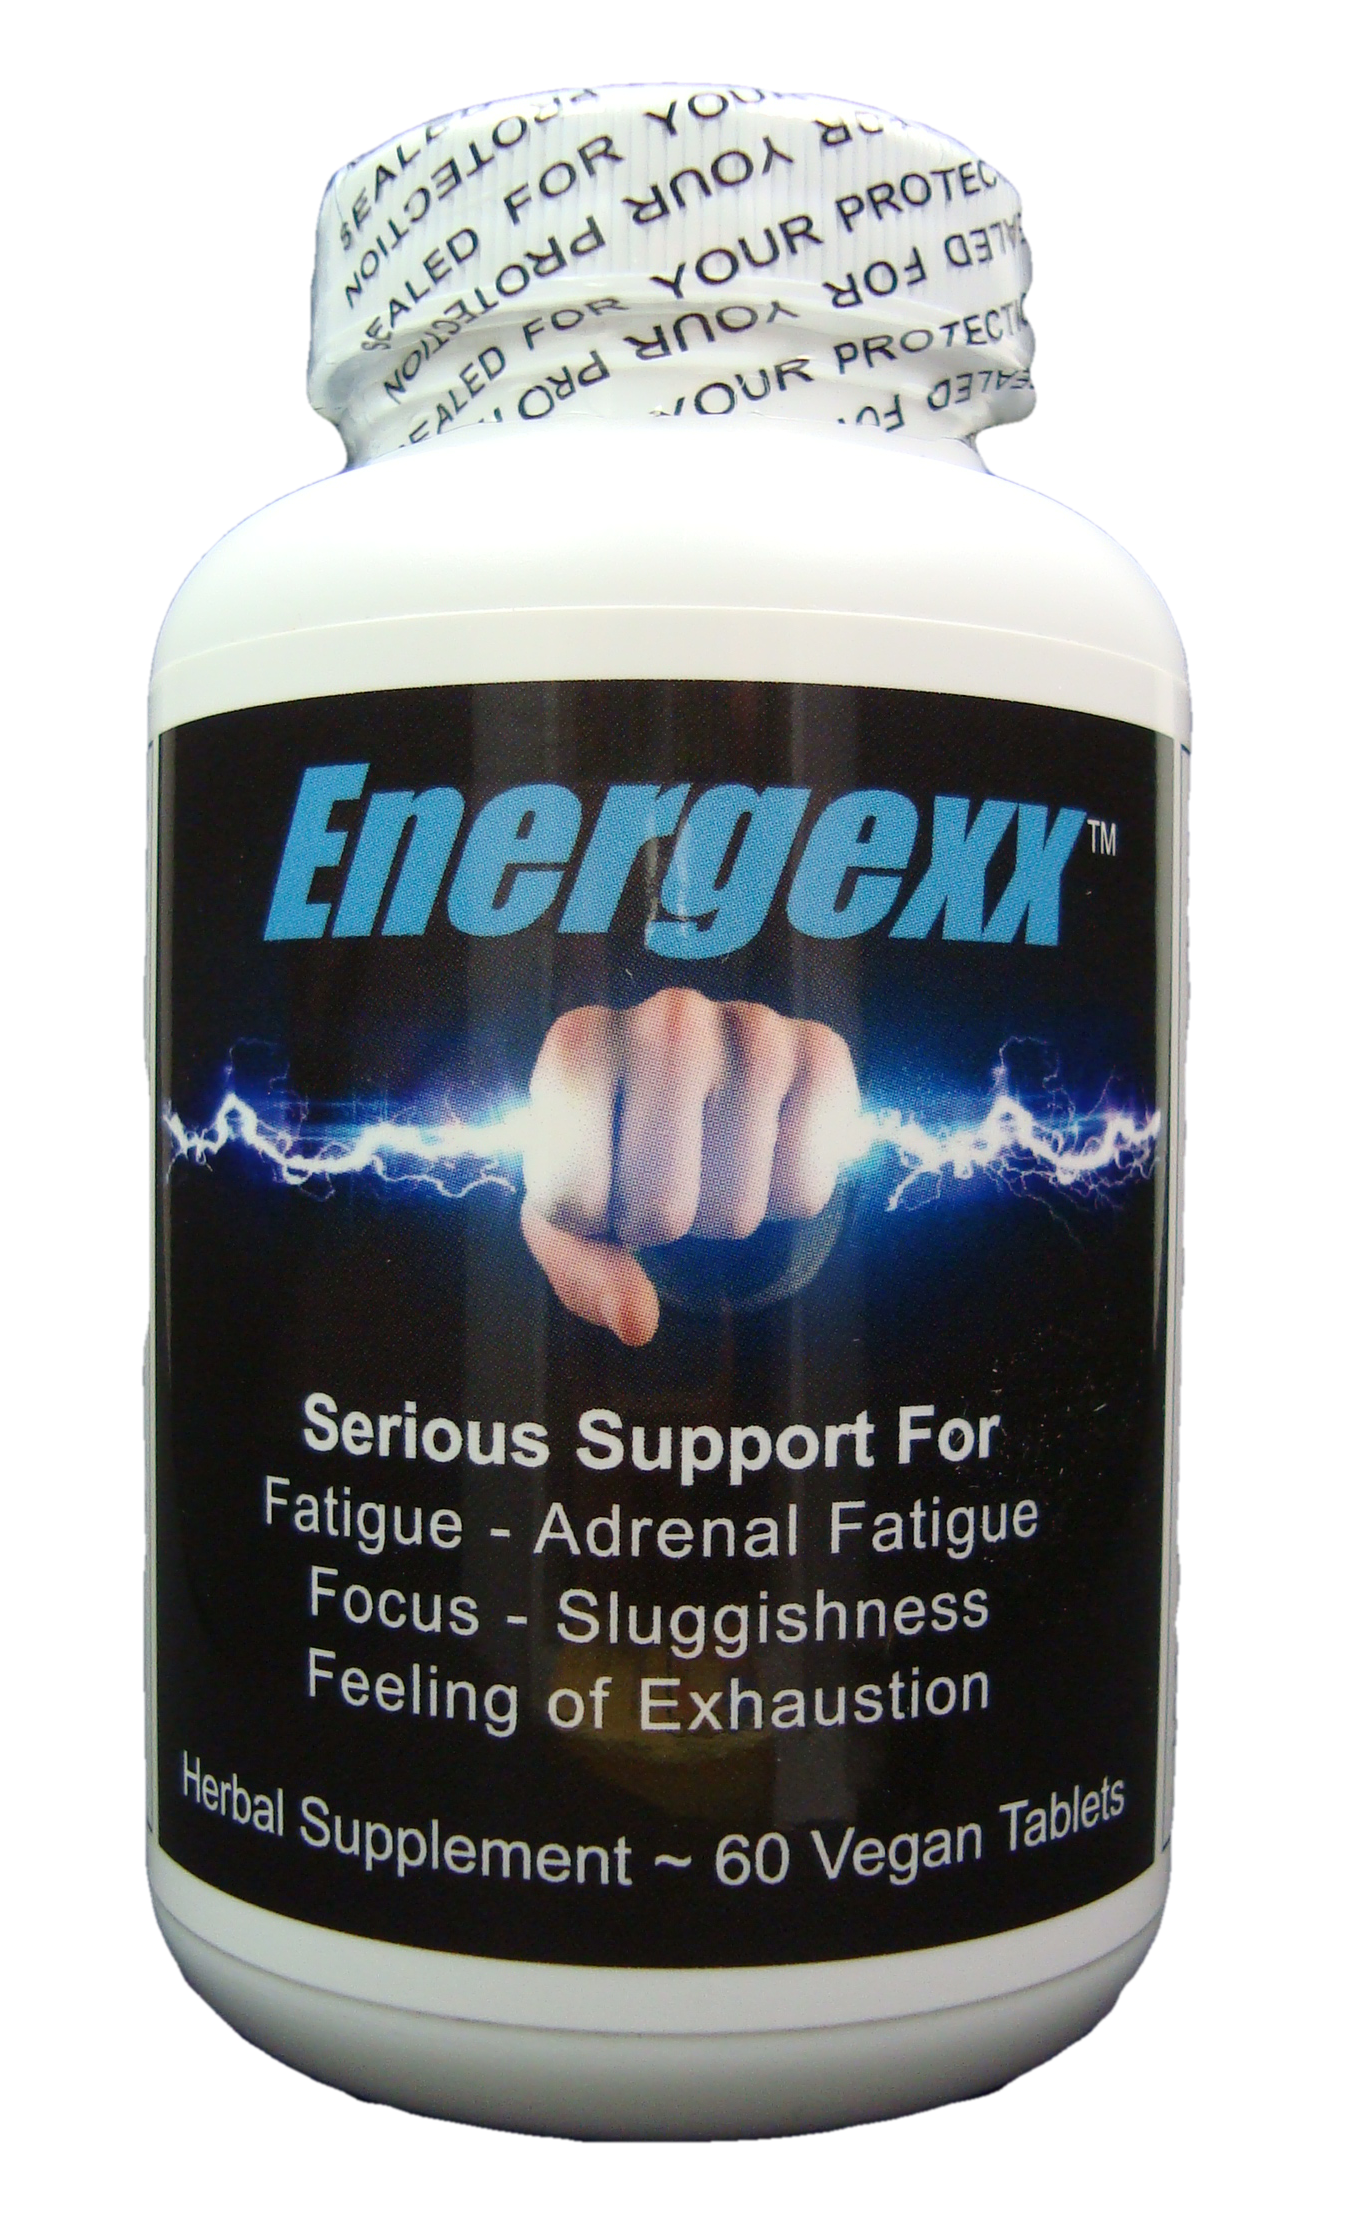 Energexx Bottle